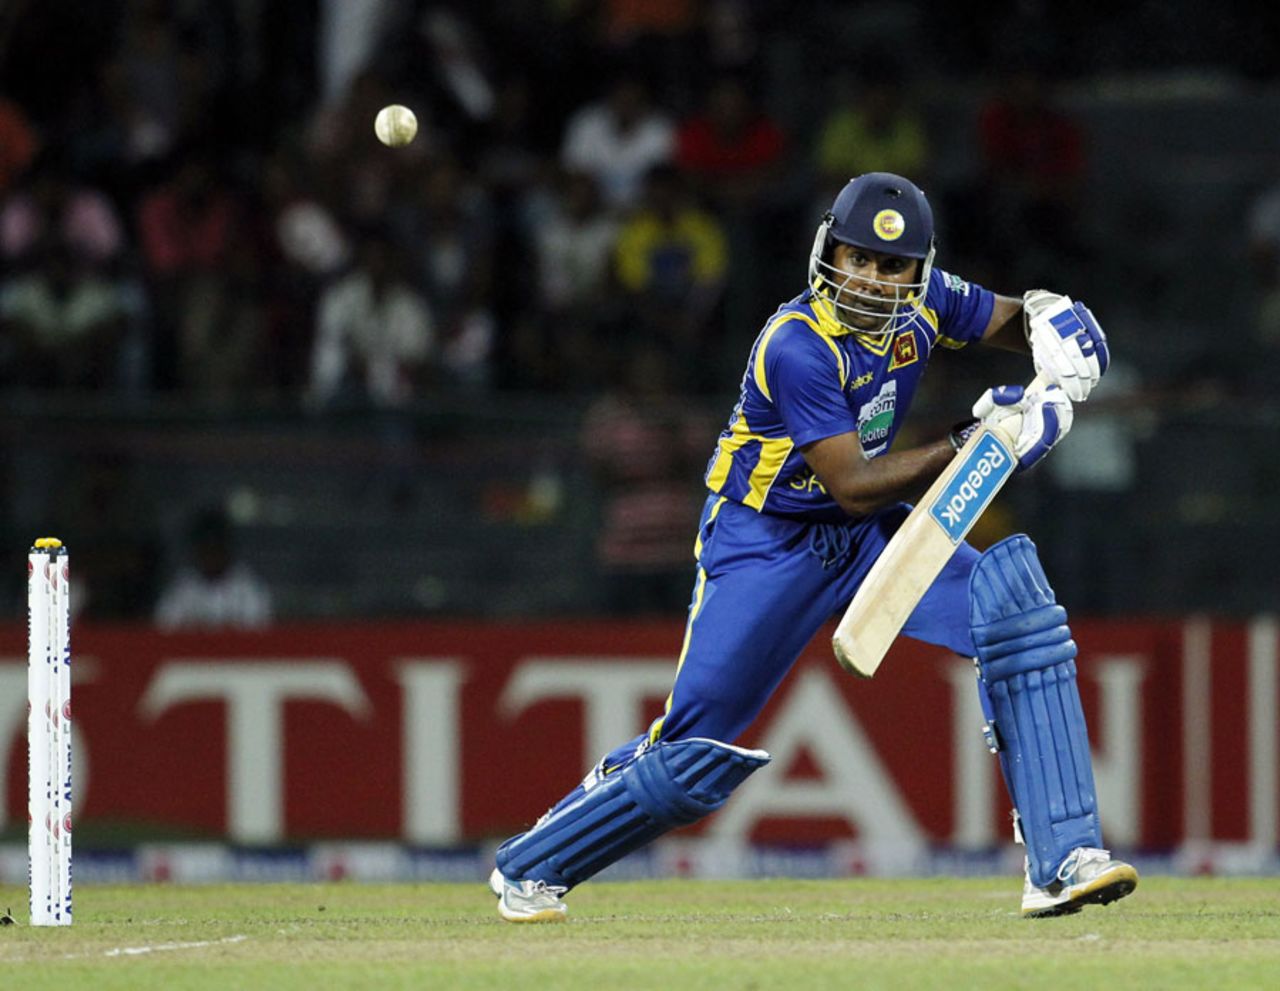 Mahela Jayawardene picks a gap on his way to a fifty, Sri Lanka v Australia, 5th ODI, Colombo, August 22, 2011